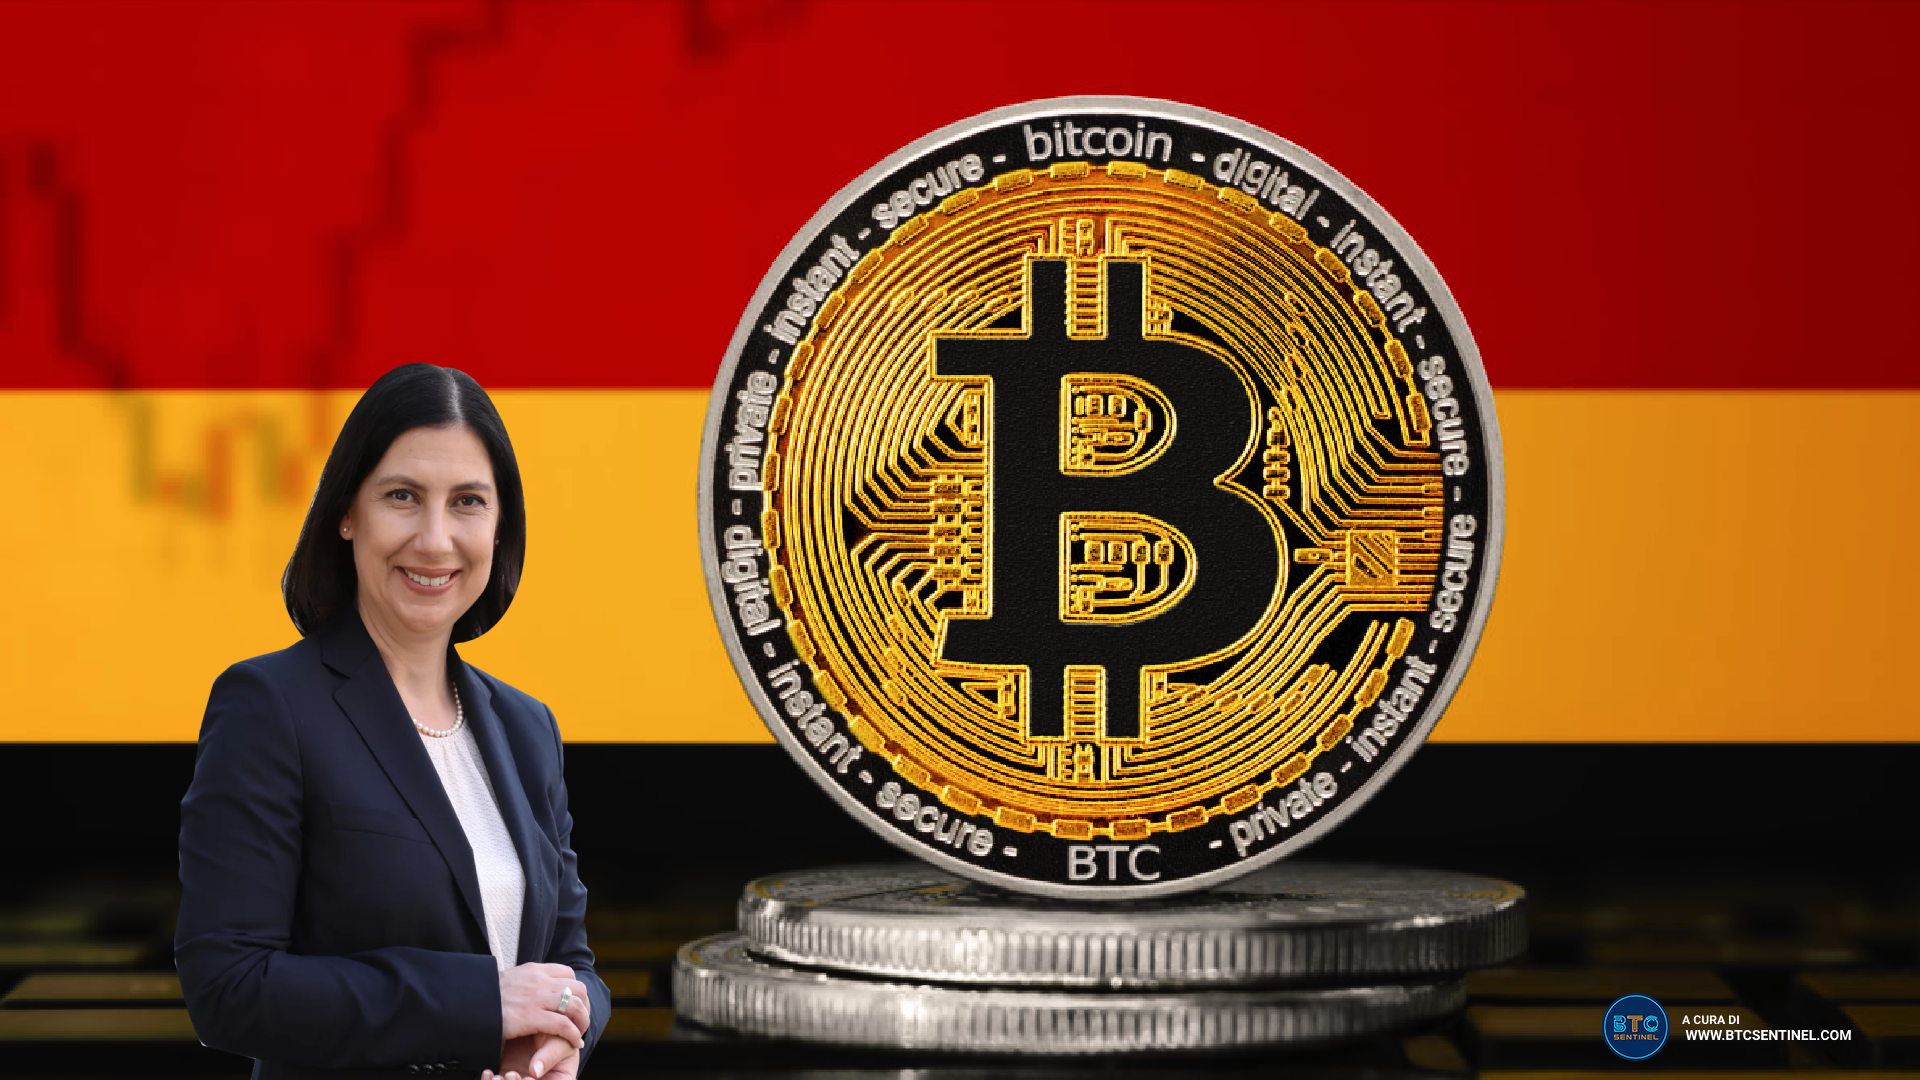 Bitcoin esentasse in Germania anche se in staking: ecco le novità